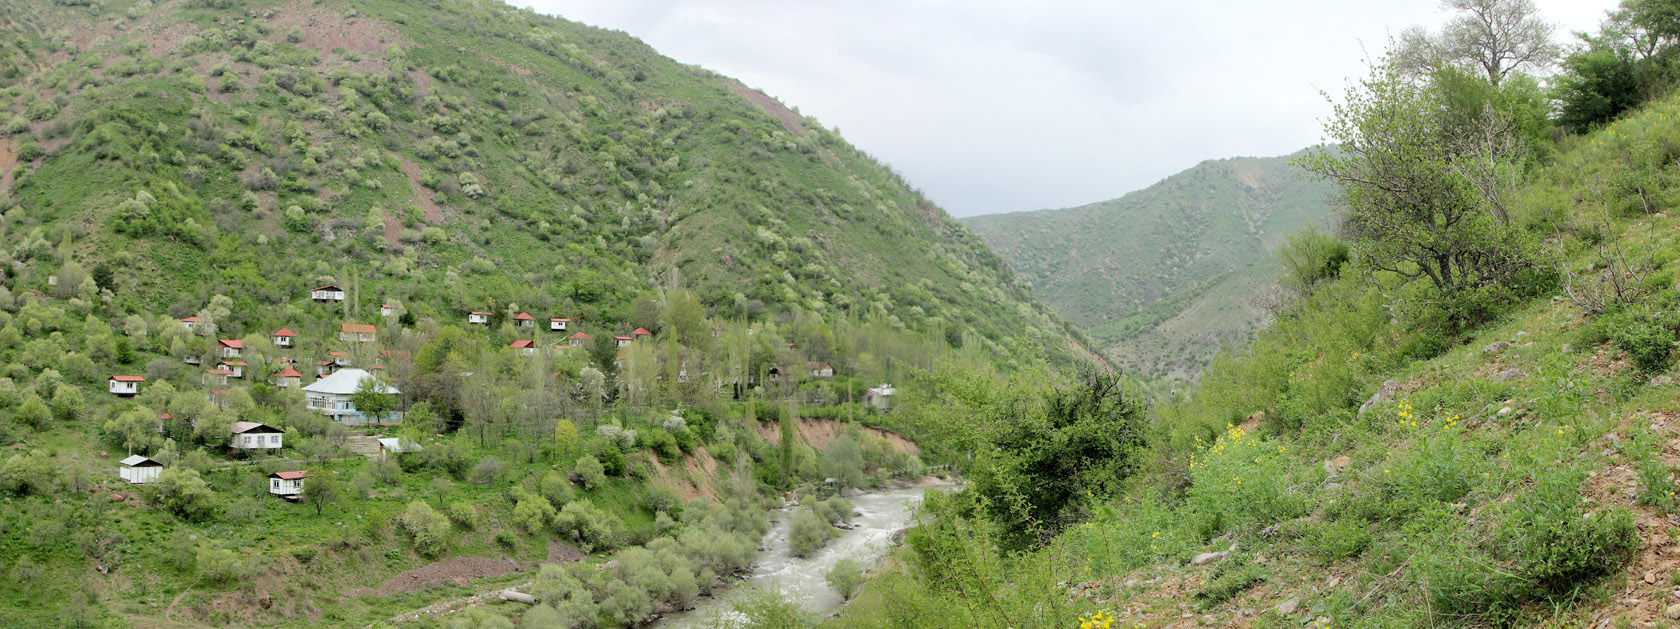 Окрестности села Хумсан, изображение ландшафта.